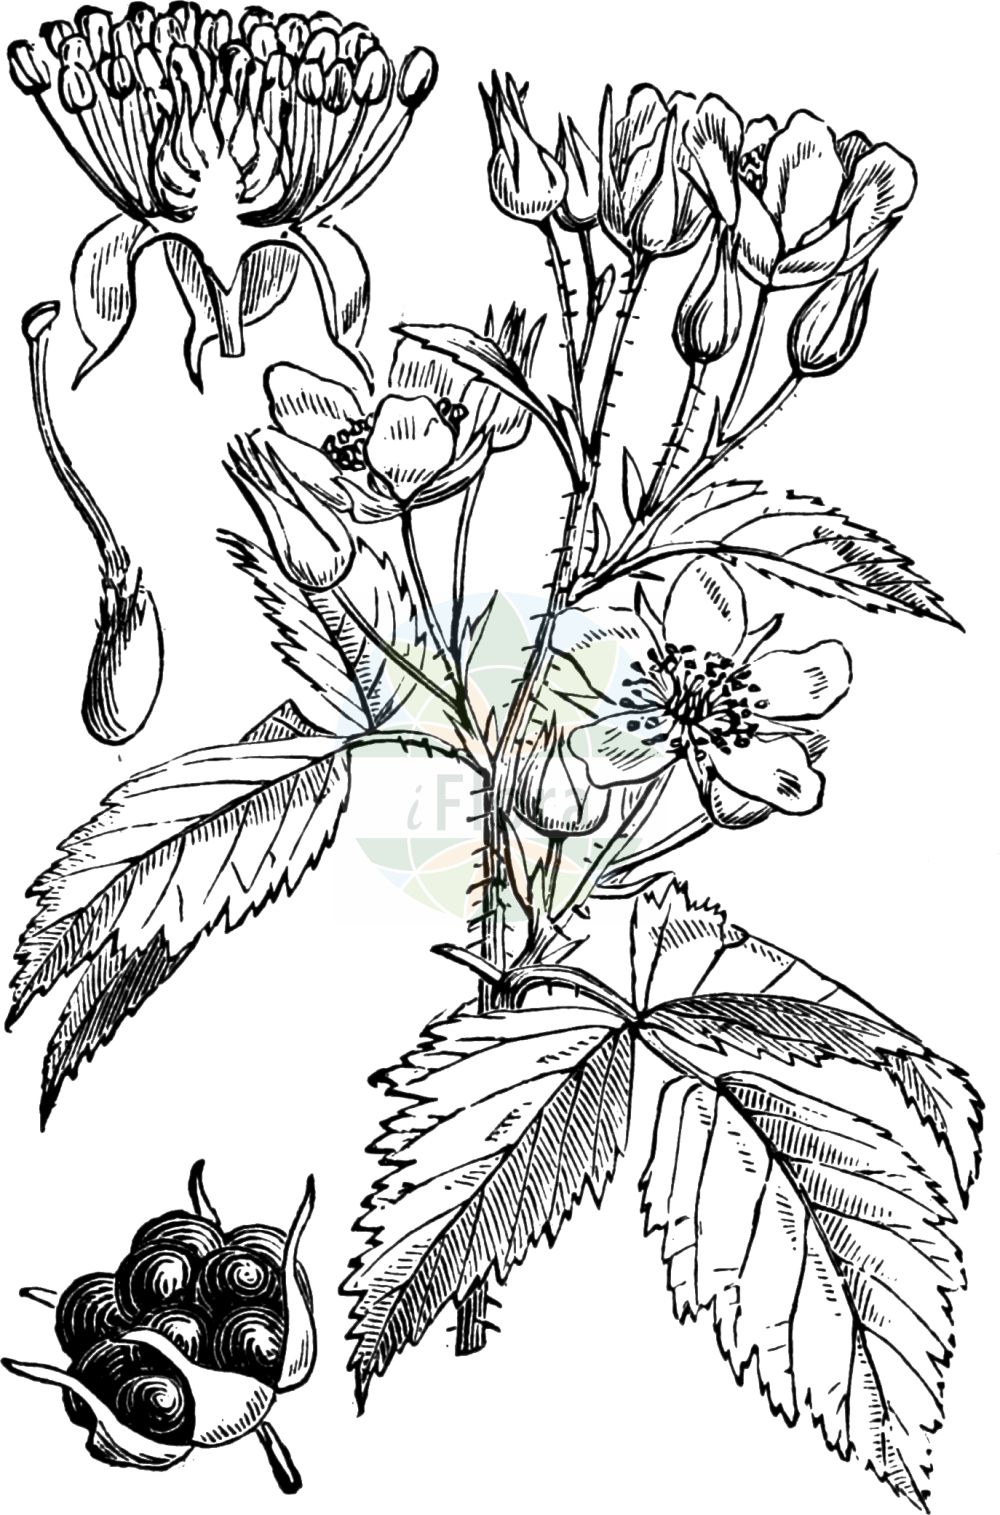 Historische Abbildung von Rubus caesius (Kratzbeere - Dewberry). Das Bild zeigt Blatt, Bluete, Frucht und Same. ---- Historical Drawing of Rubus caesius (Kratzbeere - Dewberry). The image is showing leaf, flower, fruit and seed.(Rubus caesius,Kratzbeere,Dewberry,Rubus caesius,Rubus coeruleus,Rubus humilis,Rubus ligerinus,Rubus mitissimus,Rubus rivalis,Rubus sabulosus,Selnorition caesium,Kratzbeere,Auen-Brombeere,Bastard-Himbeere,Bereifte Brombeere,Bockbeere,Dewberry,Blue Bramble,Common Dewberry,European Dewberry,Rubus,Brombeere,Raspberry,Rosaceae,Rosengewächse,Rose family,Blatt,Bluete,Frucht,Same,leaf,flower,fruit,seed,Fitch et al. (1880))